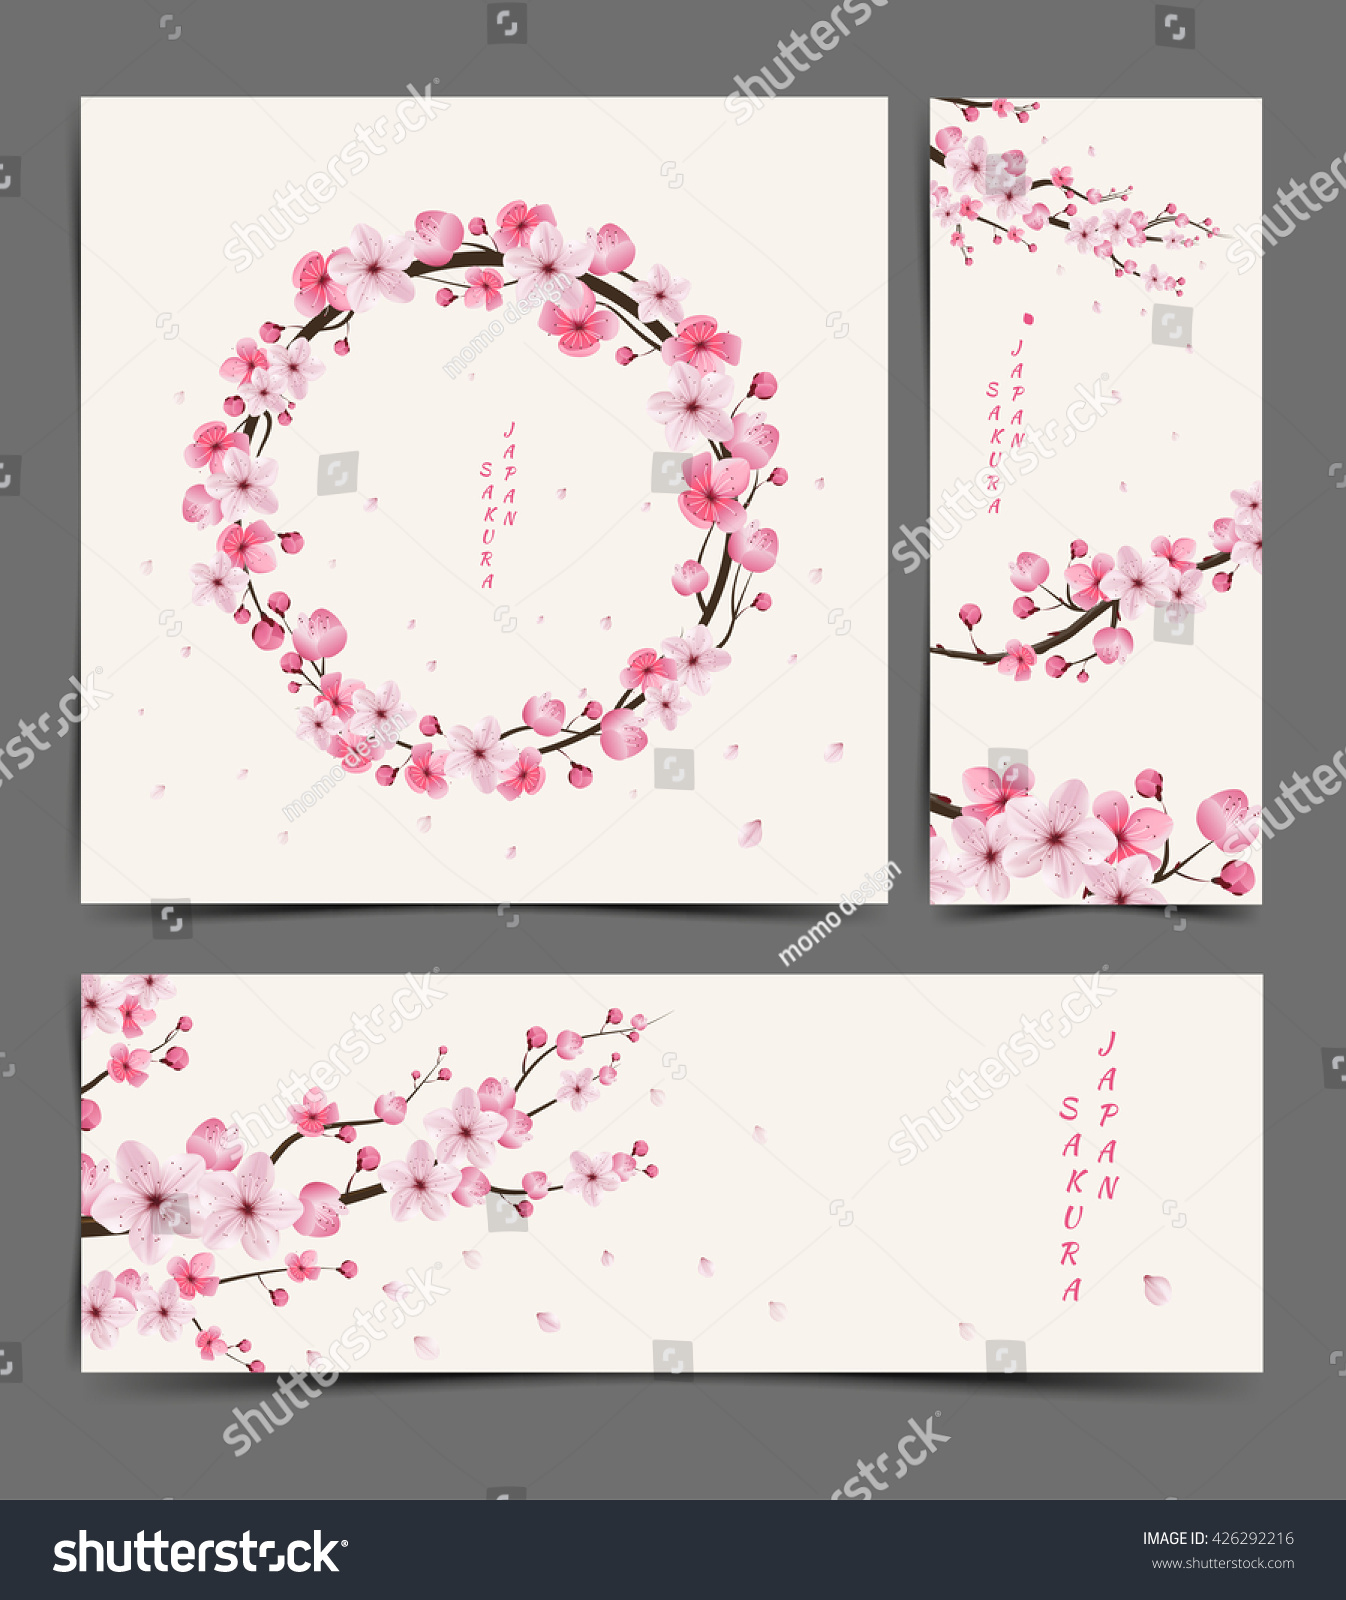 桜のリアルなベクター画像 イラスト レイアウト カード テンプレート 桜 日本 のベクター画像素材 ロイヤリティフリー